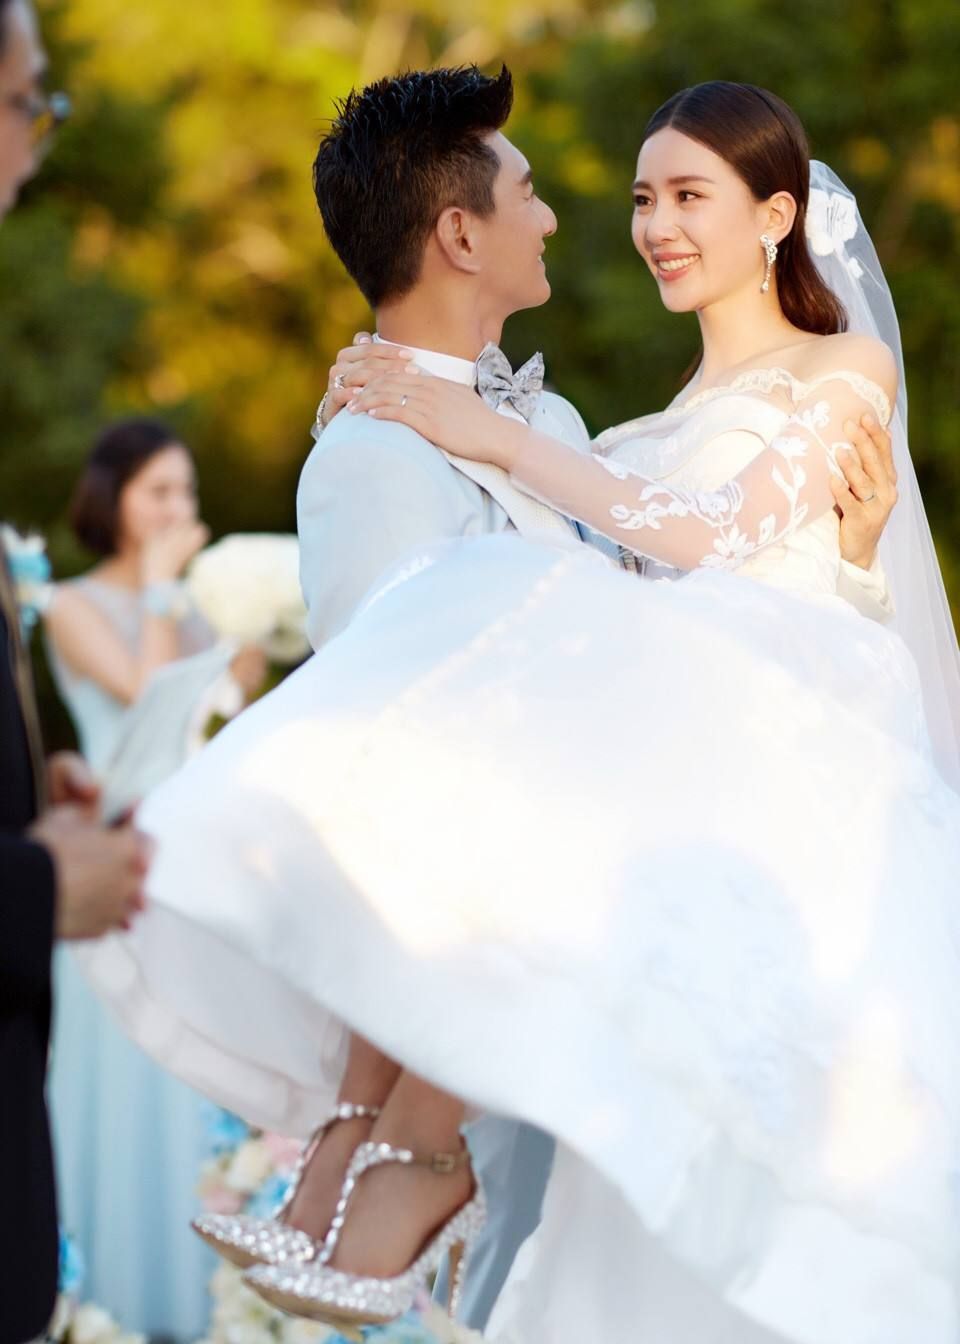 五位明星结婚写真照,杨幂双宋已成回忆,只有一对最甜蜜!